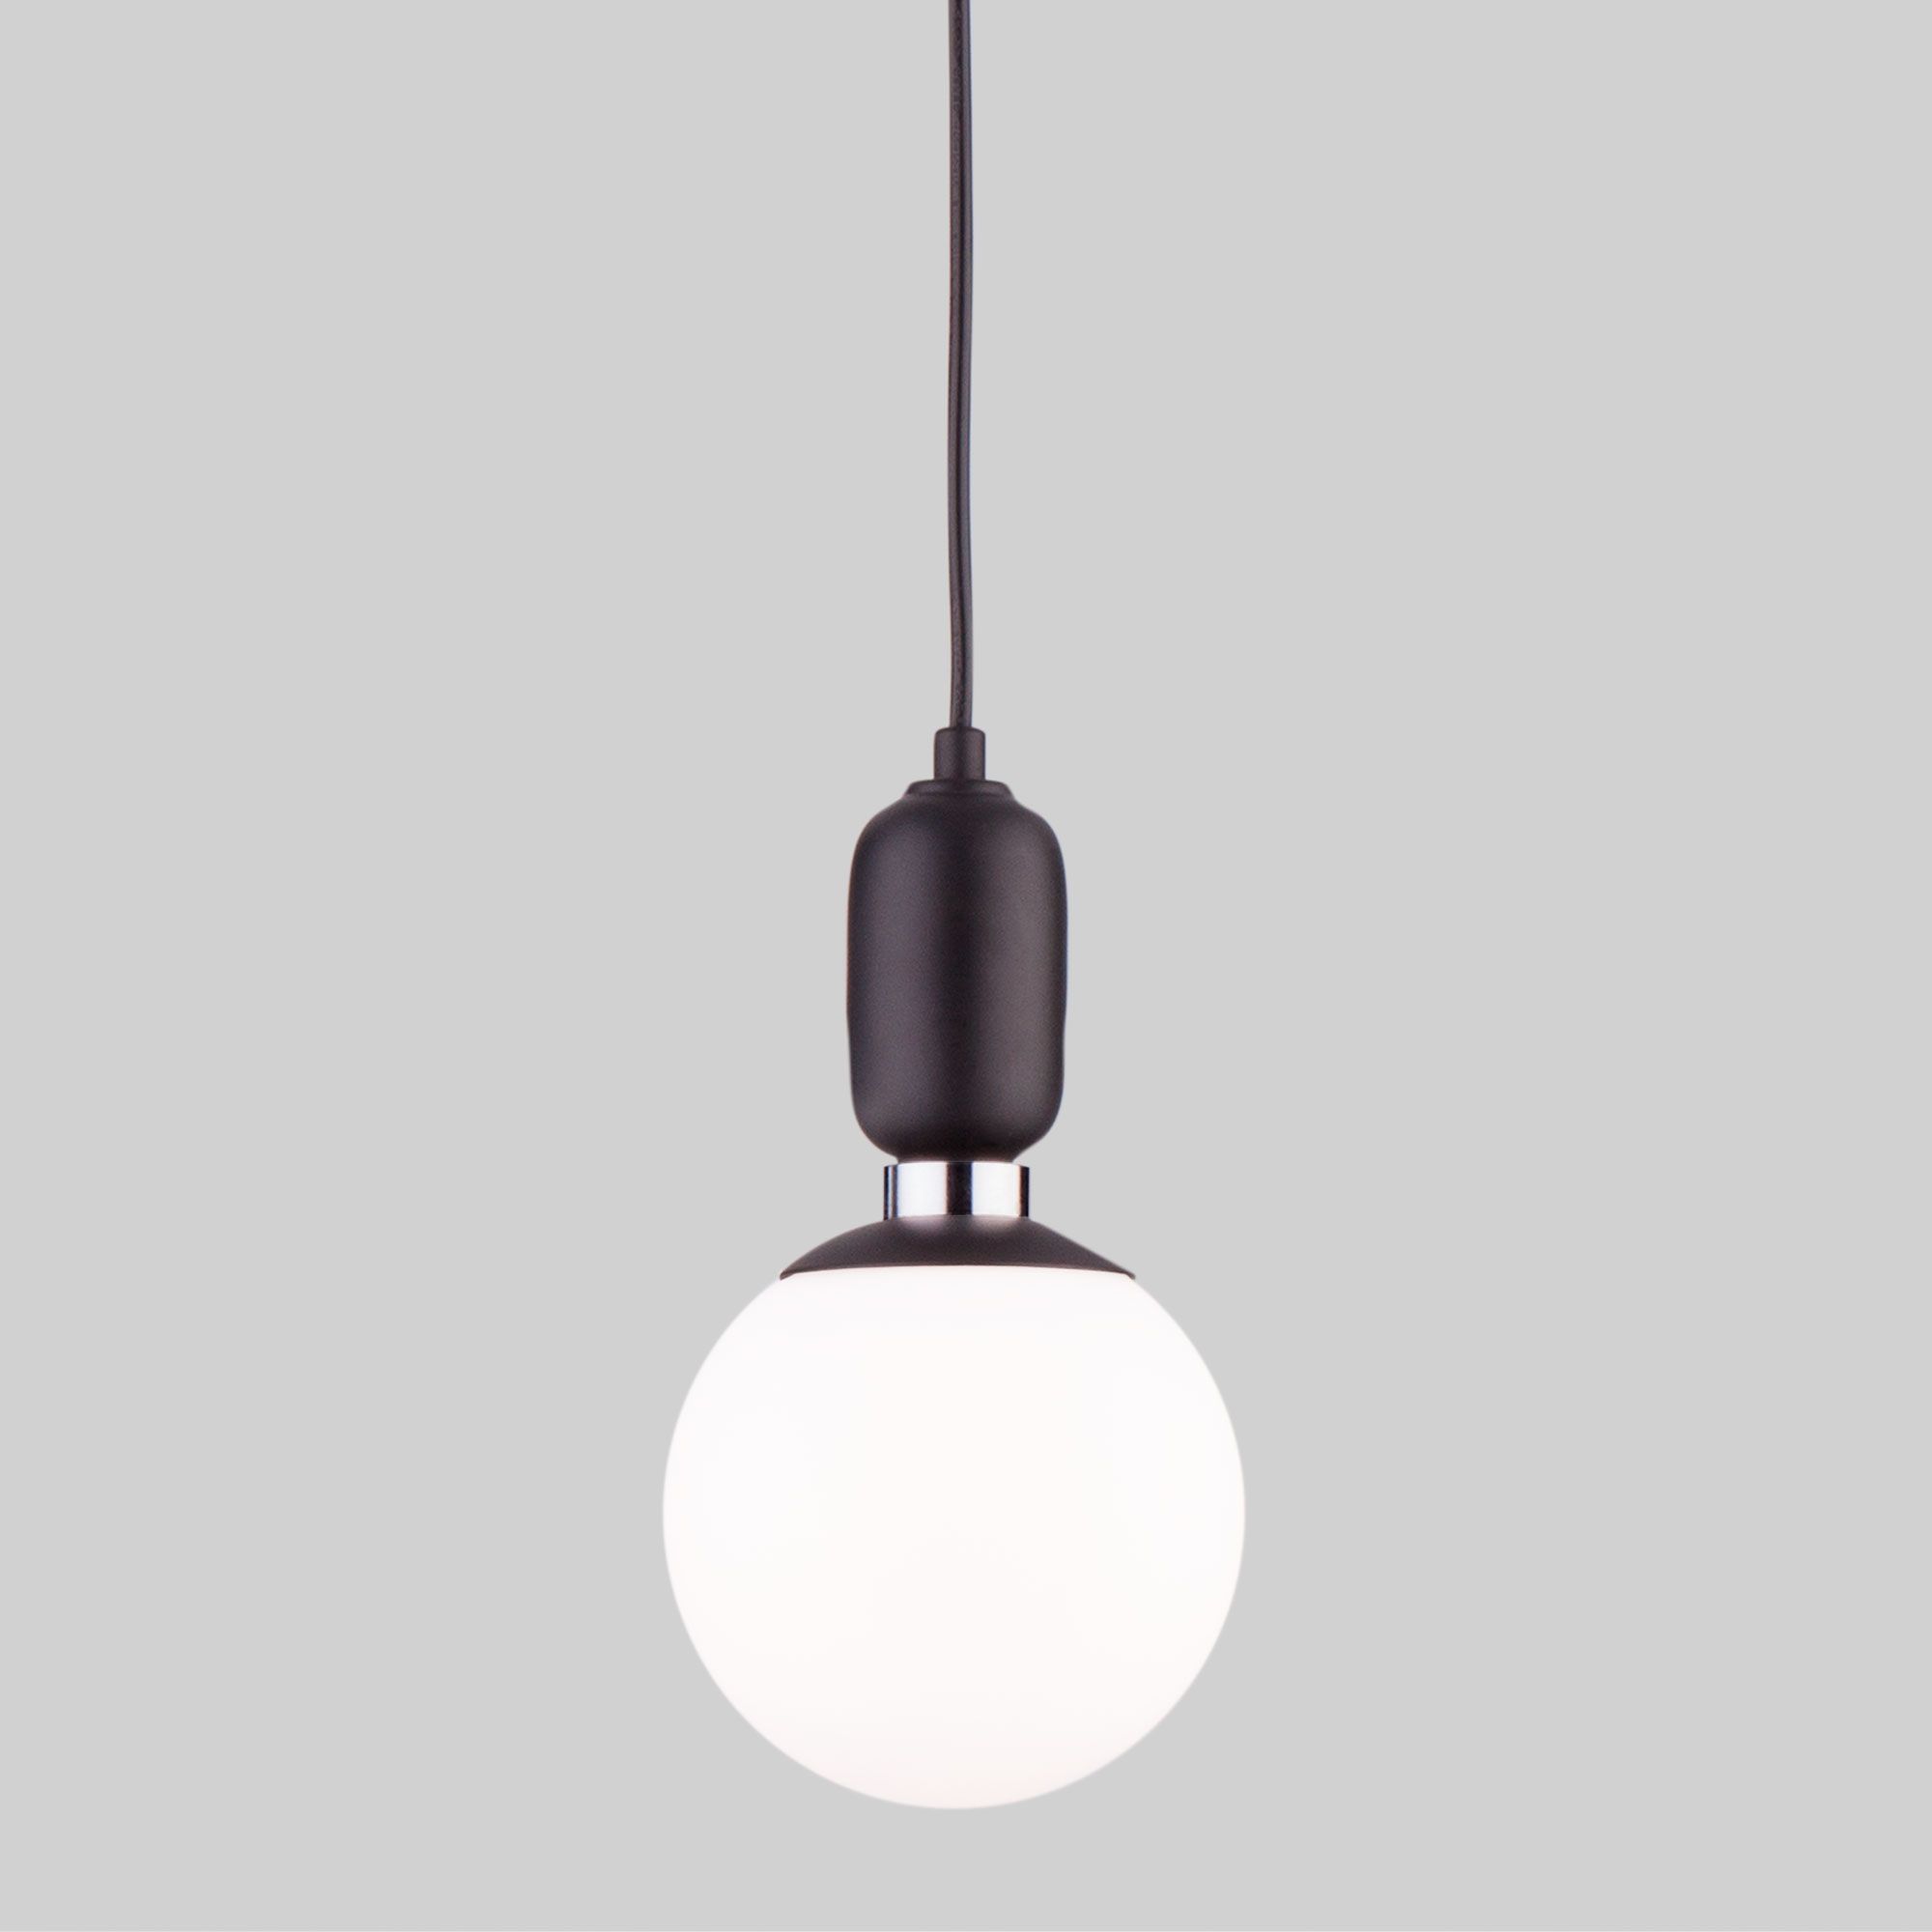 Подвесной светильник со стеклянным плафоном 50151/1 черный